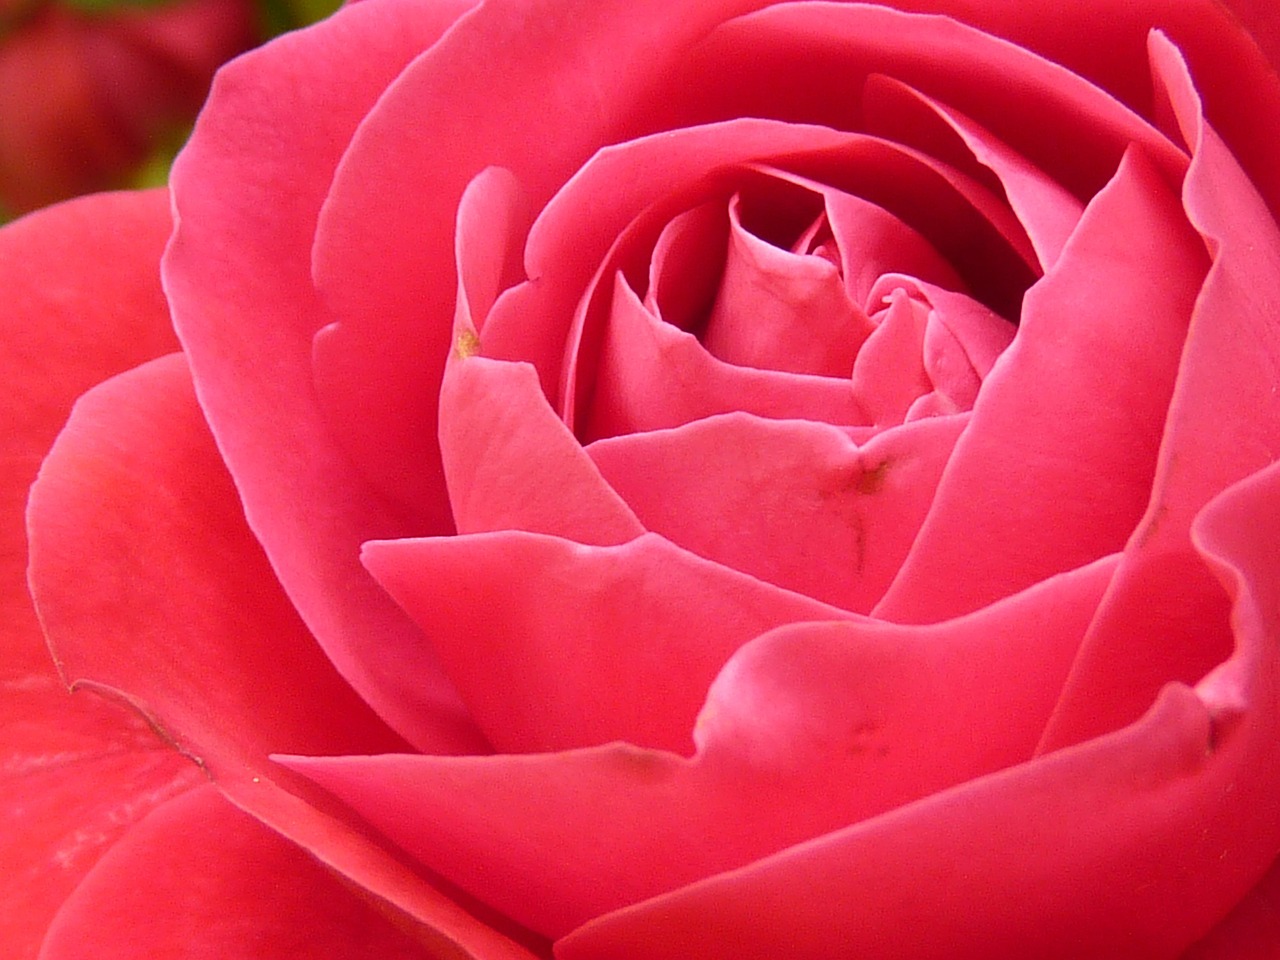 Image - rose rose bloom bloom flower red